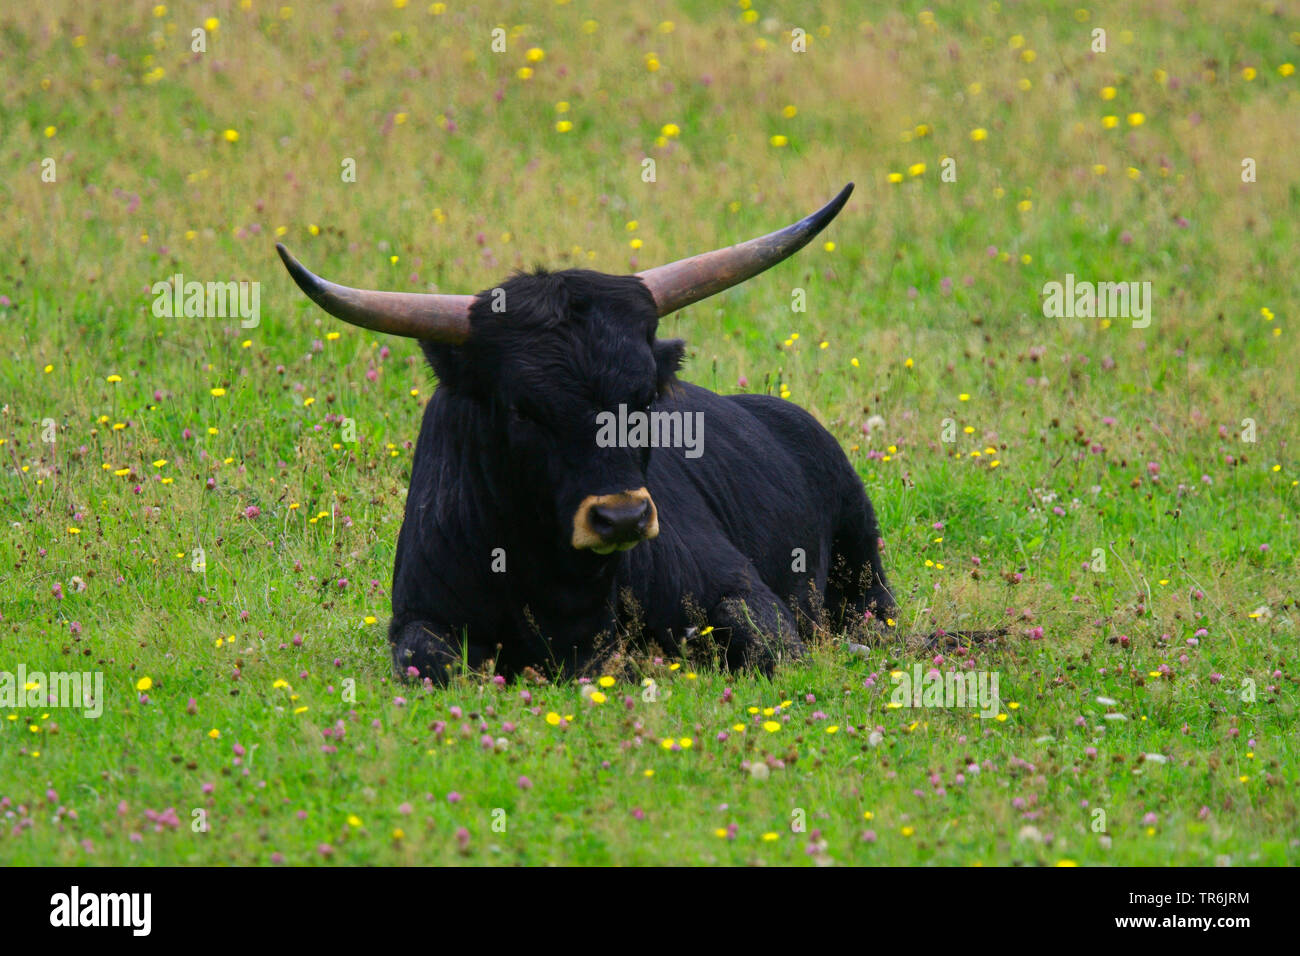 aurochs (Bos taurus, Bos primigenius), aurochs lying on a meadow, Germany Stock Photo